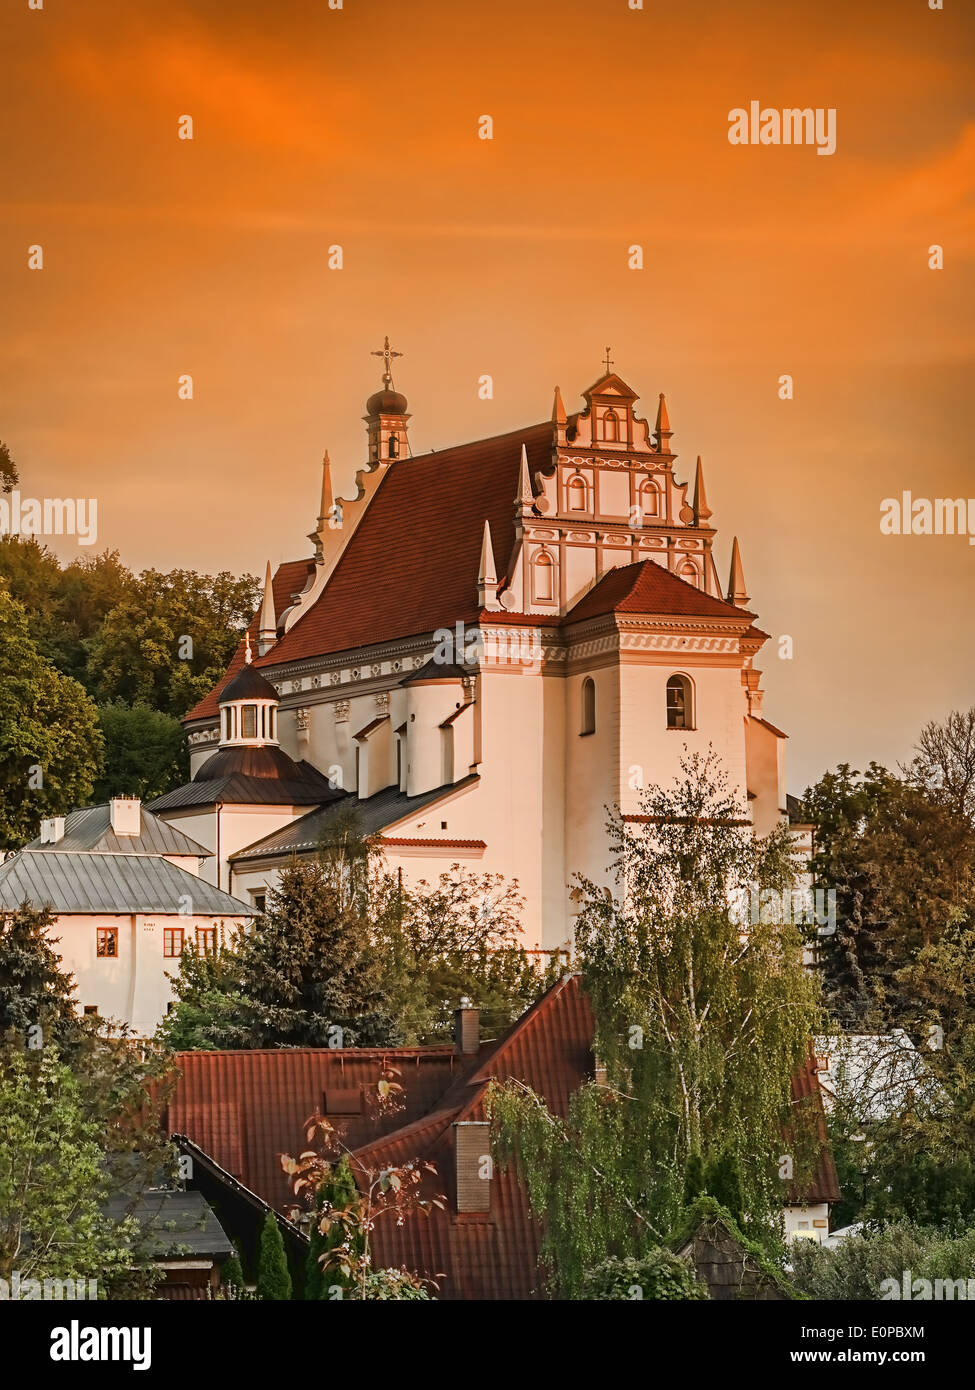 Historische Pfarrkirche Fara in Kazimierz Dolny vor Sonnenuntergang Himmel, Polen Stockfoto